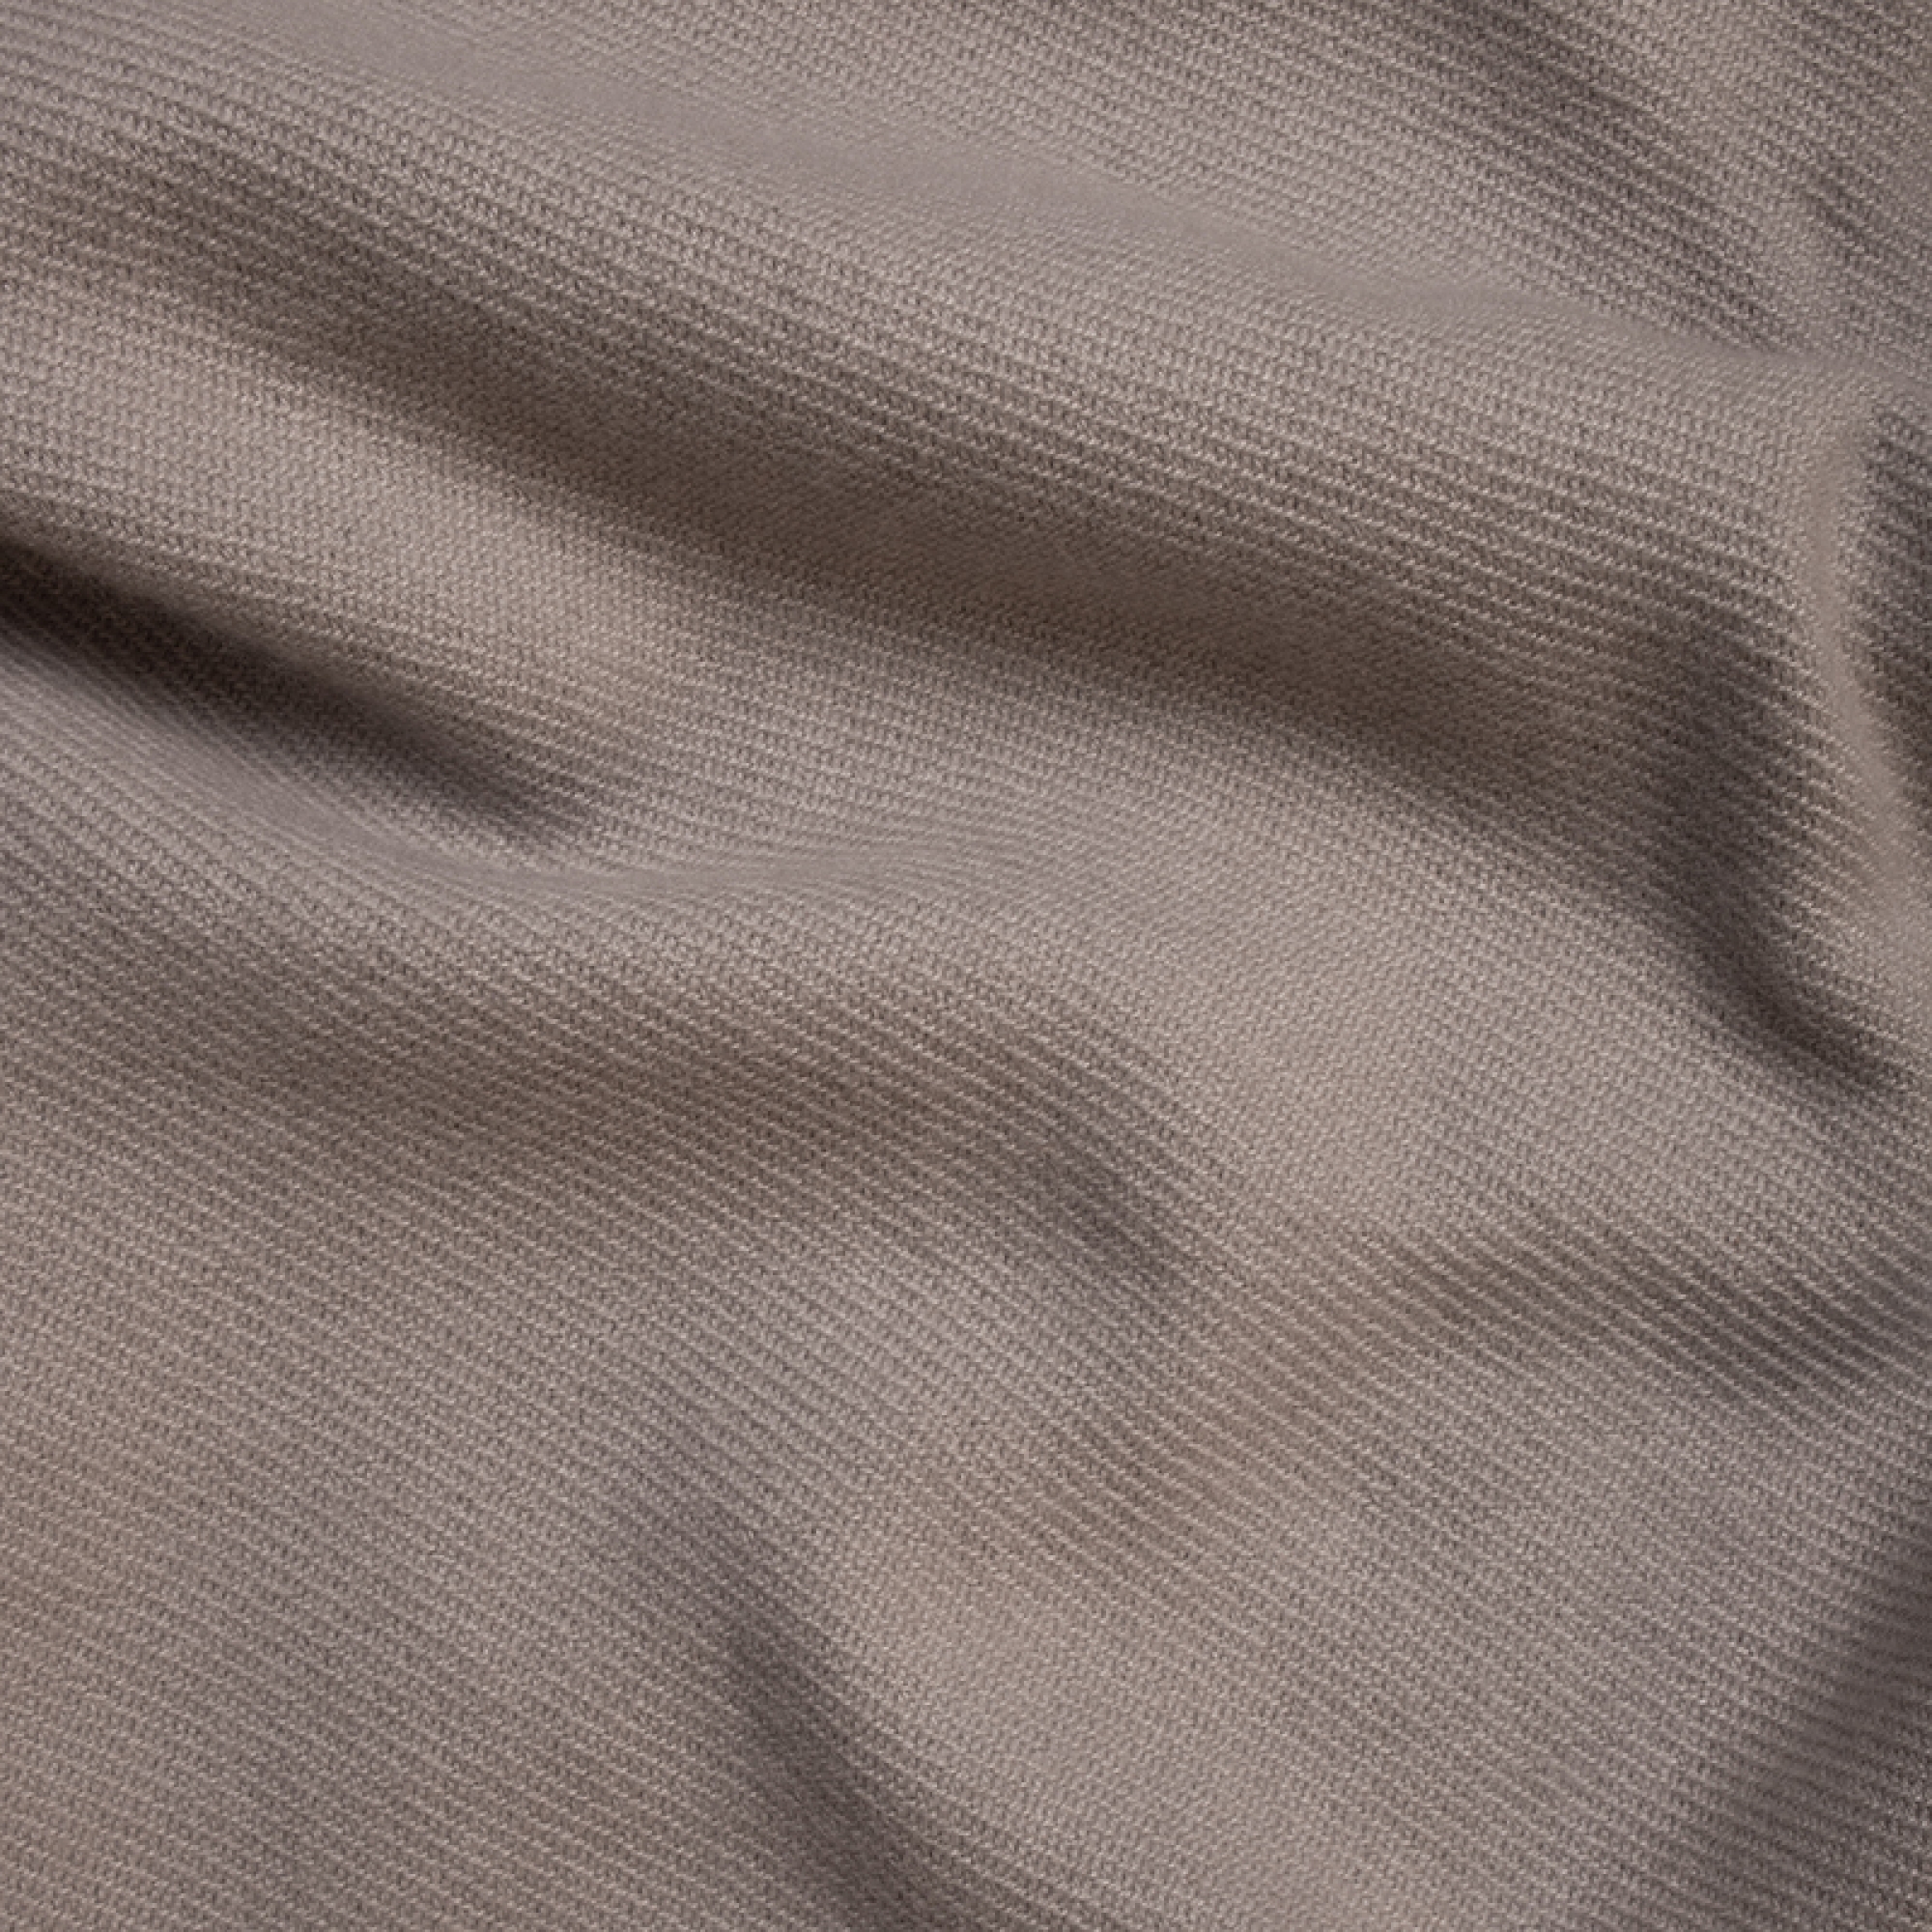 Cachemire accessoires couvertures plaids frisbi 147 x 203 gris perle 147 x 203 cm